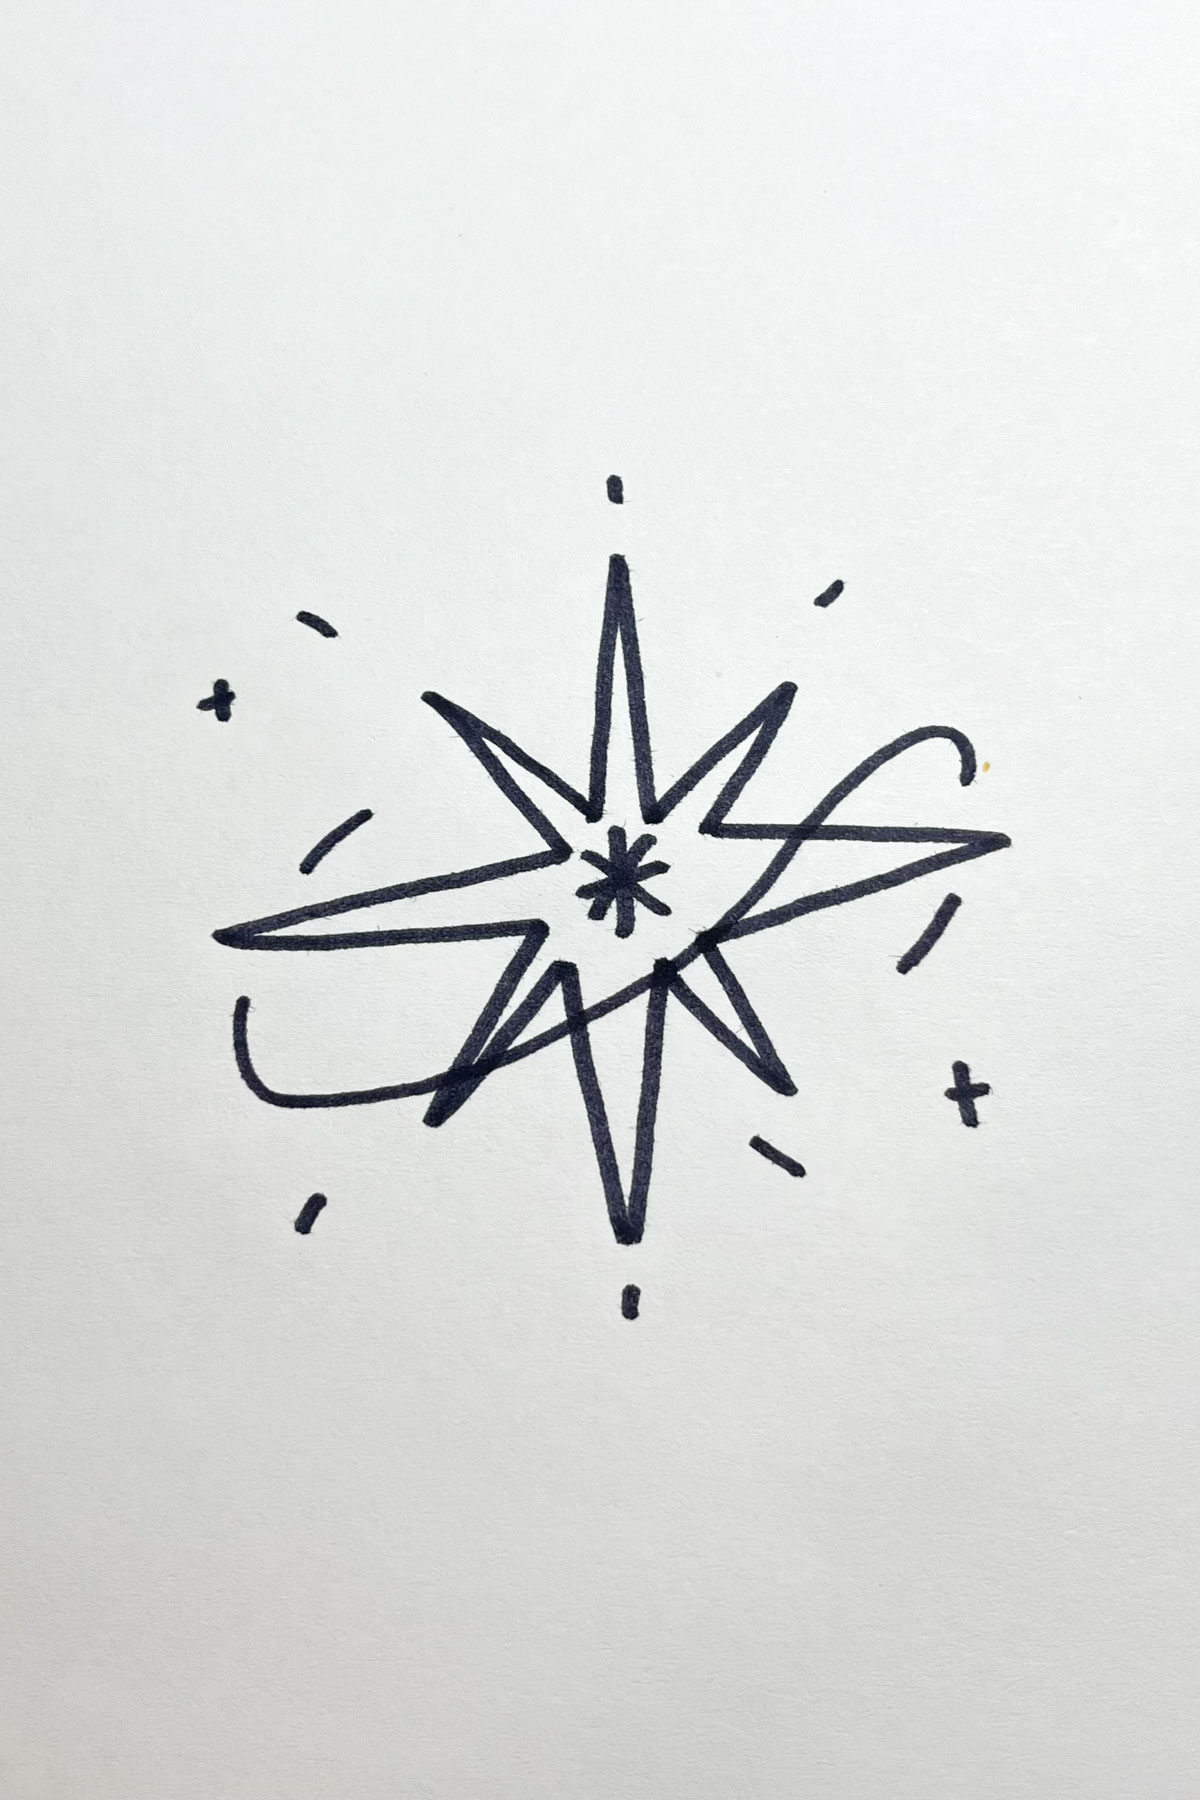 starburst drawing